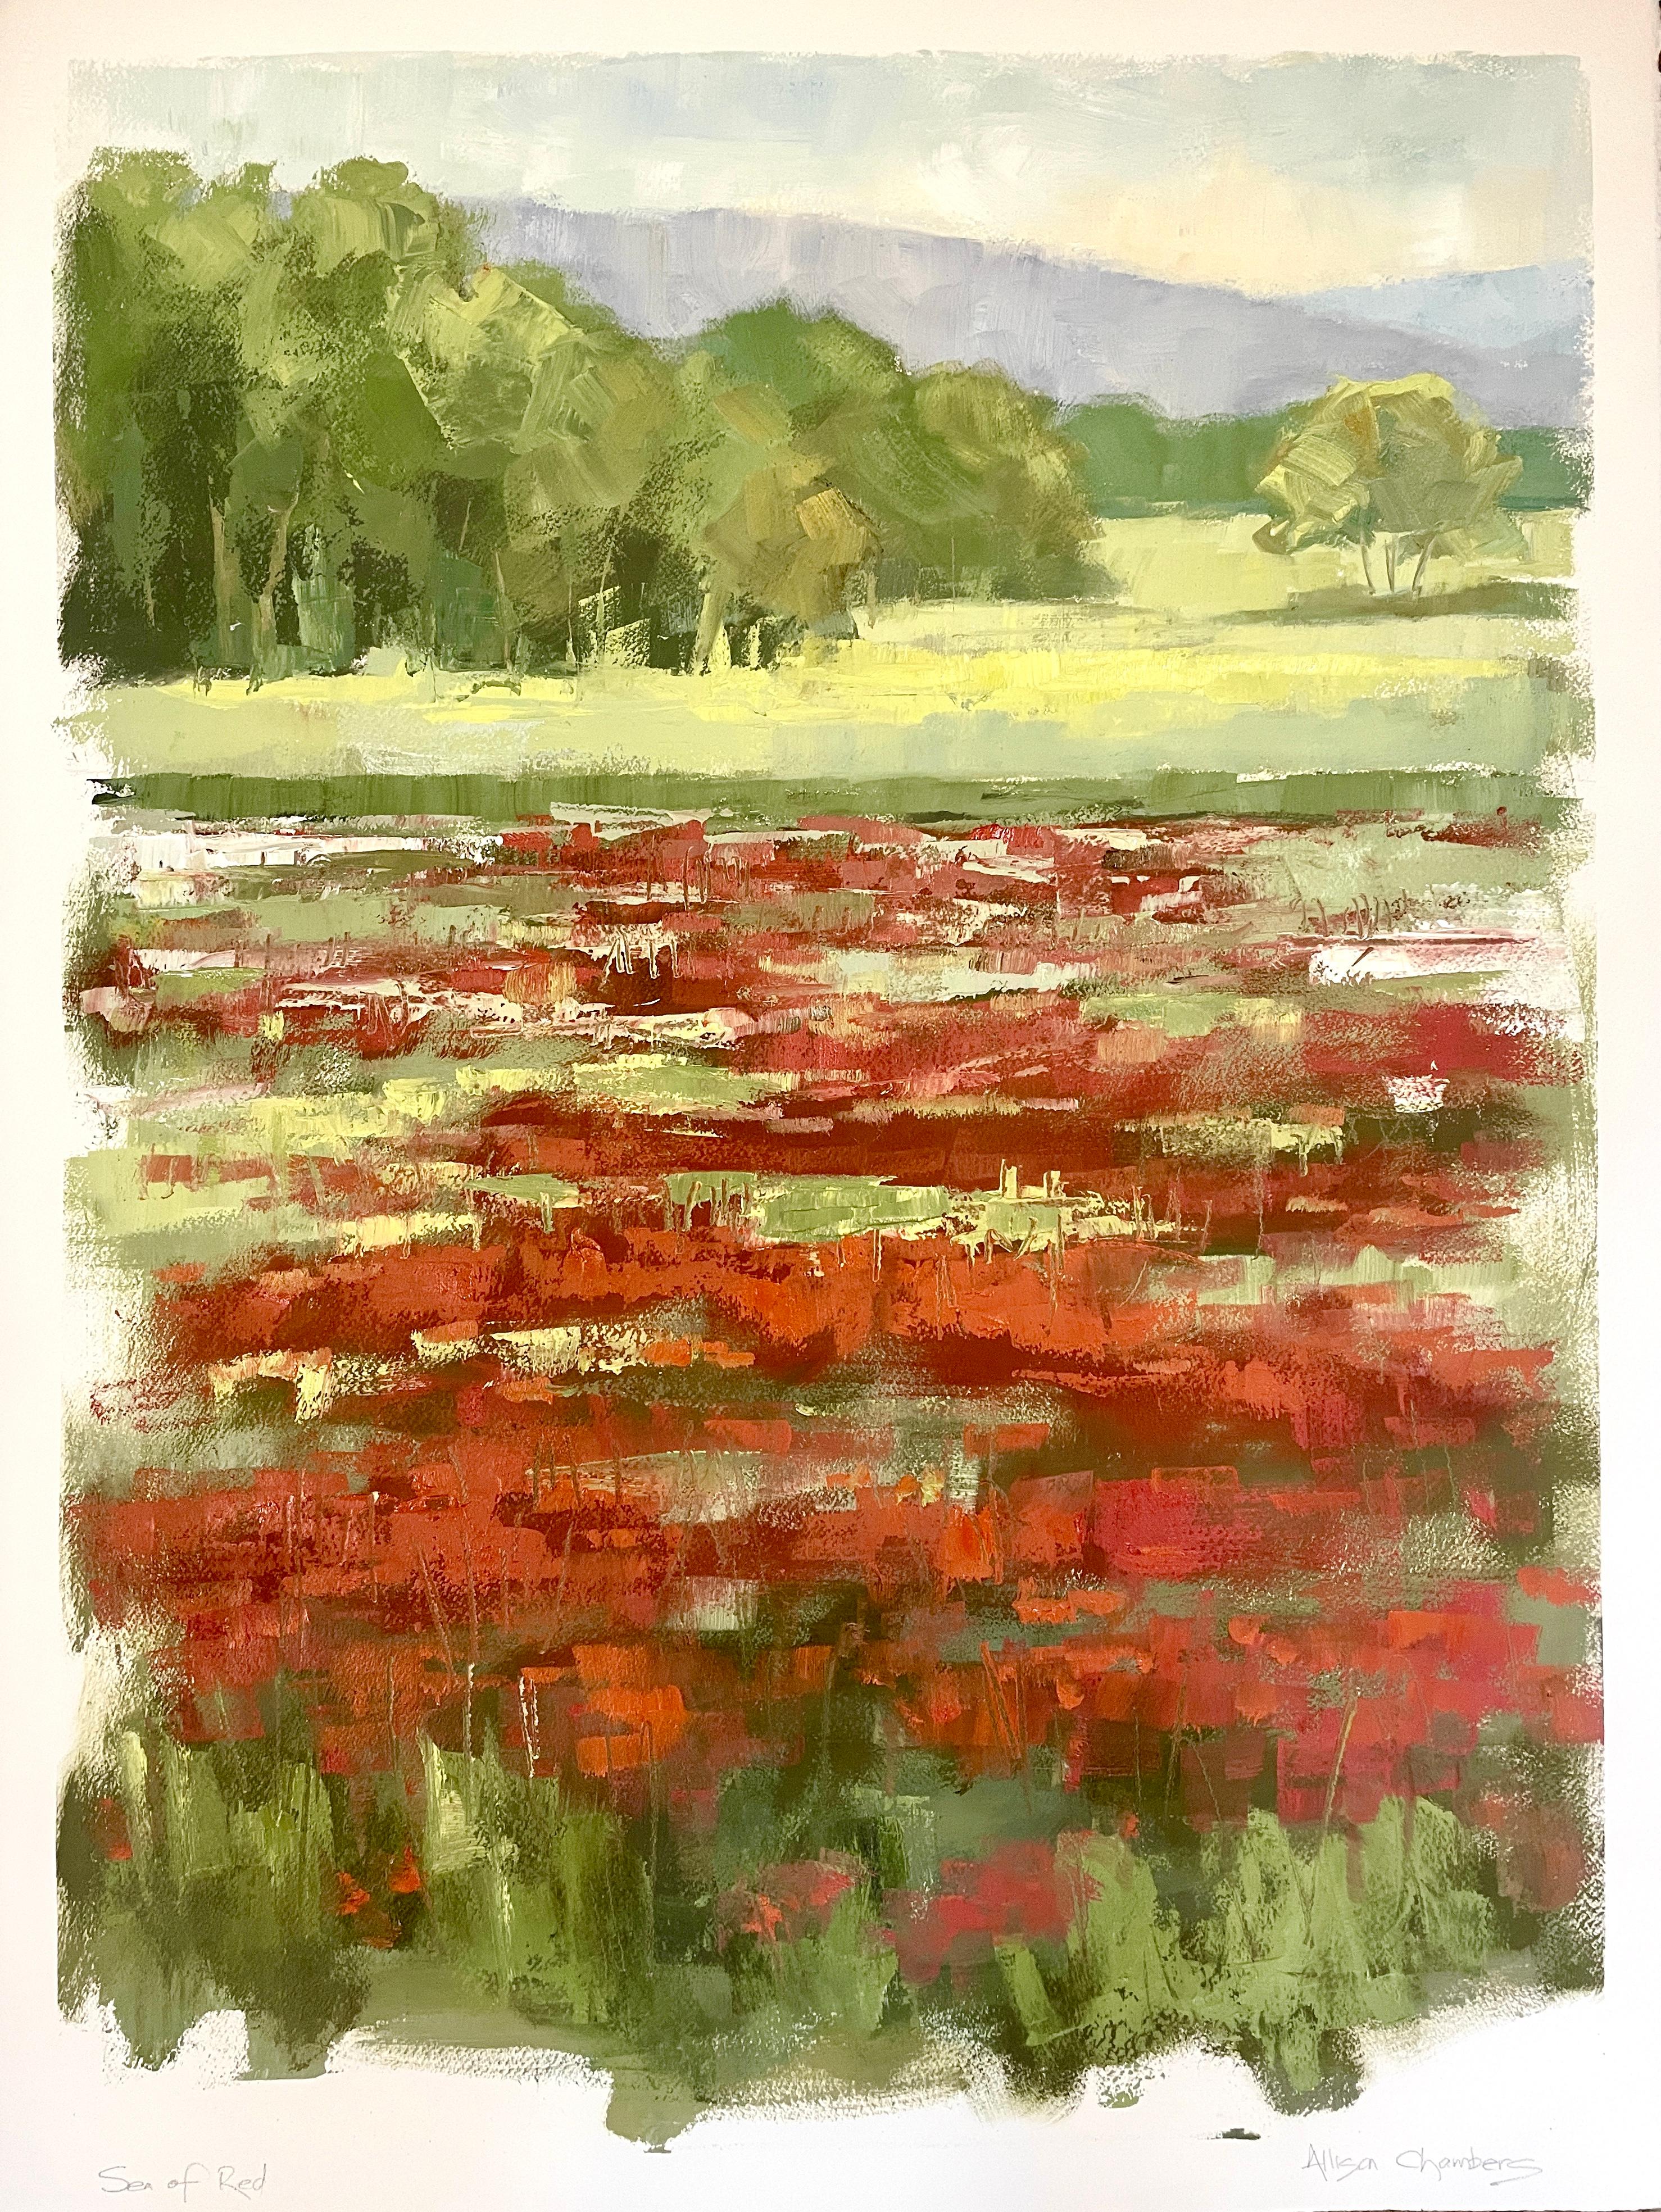 Sea of Red par Allison Chambers, peinture à l'huile sur papier de paysage vertical